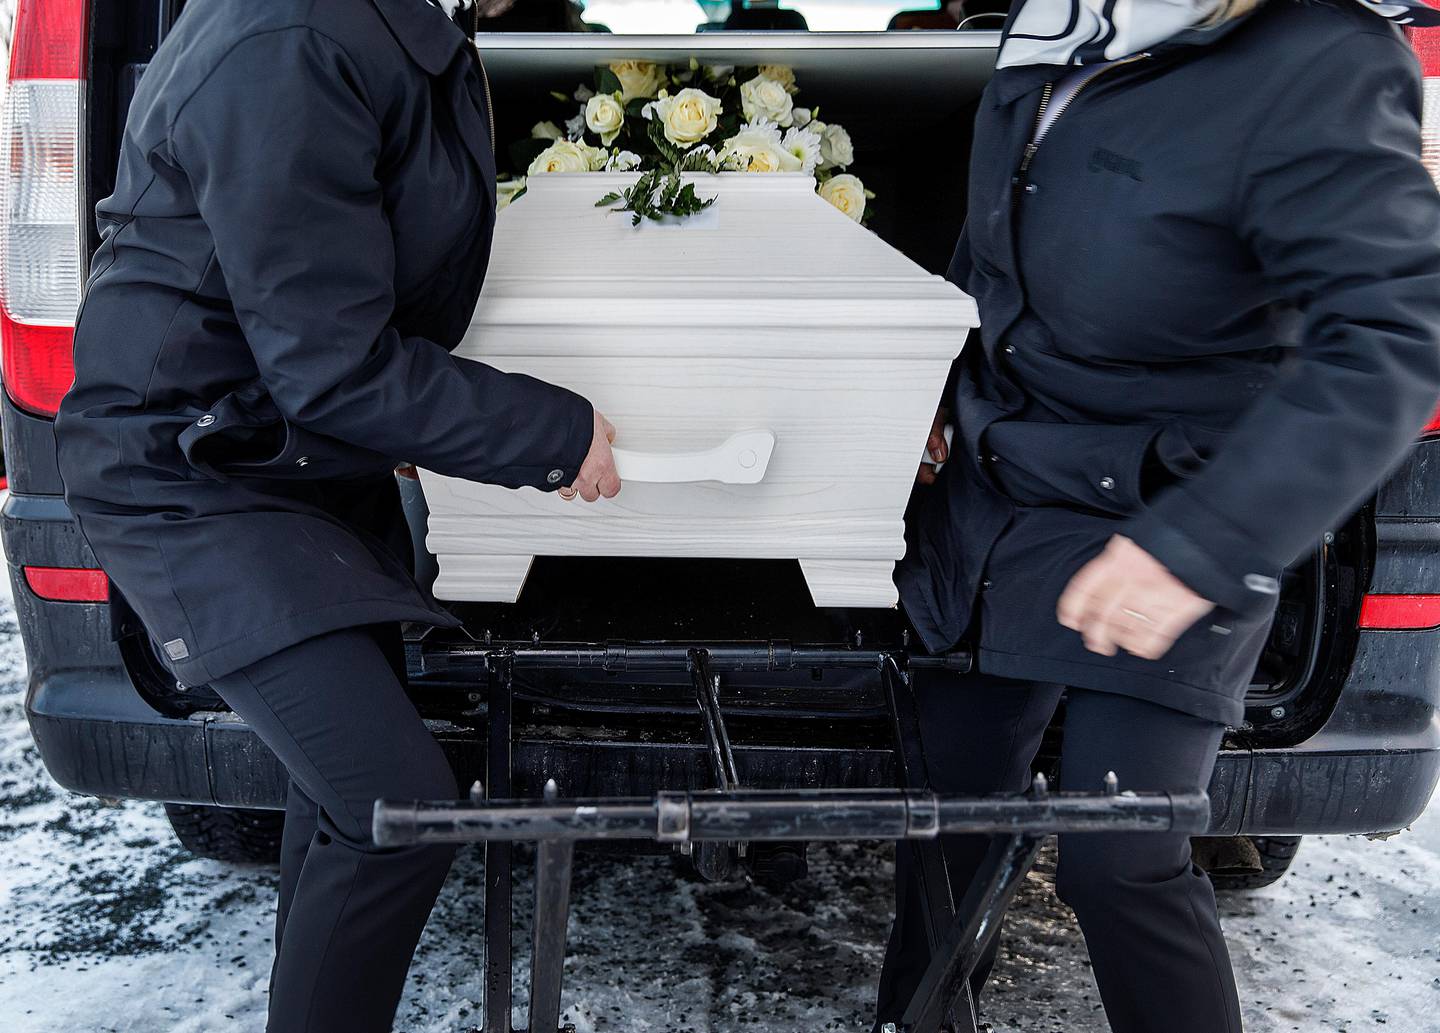 TRONDHEIM  20161206.
Begravelse i den norske kirke. Kiste som løftes ut av bil til begravelsebyrået.
Modellklarert til redaksjonell bruk.
Foto: Gorm Kallestad / NTB scanpix